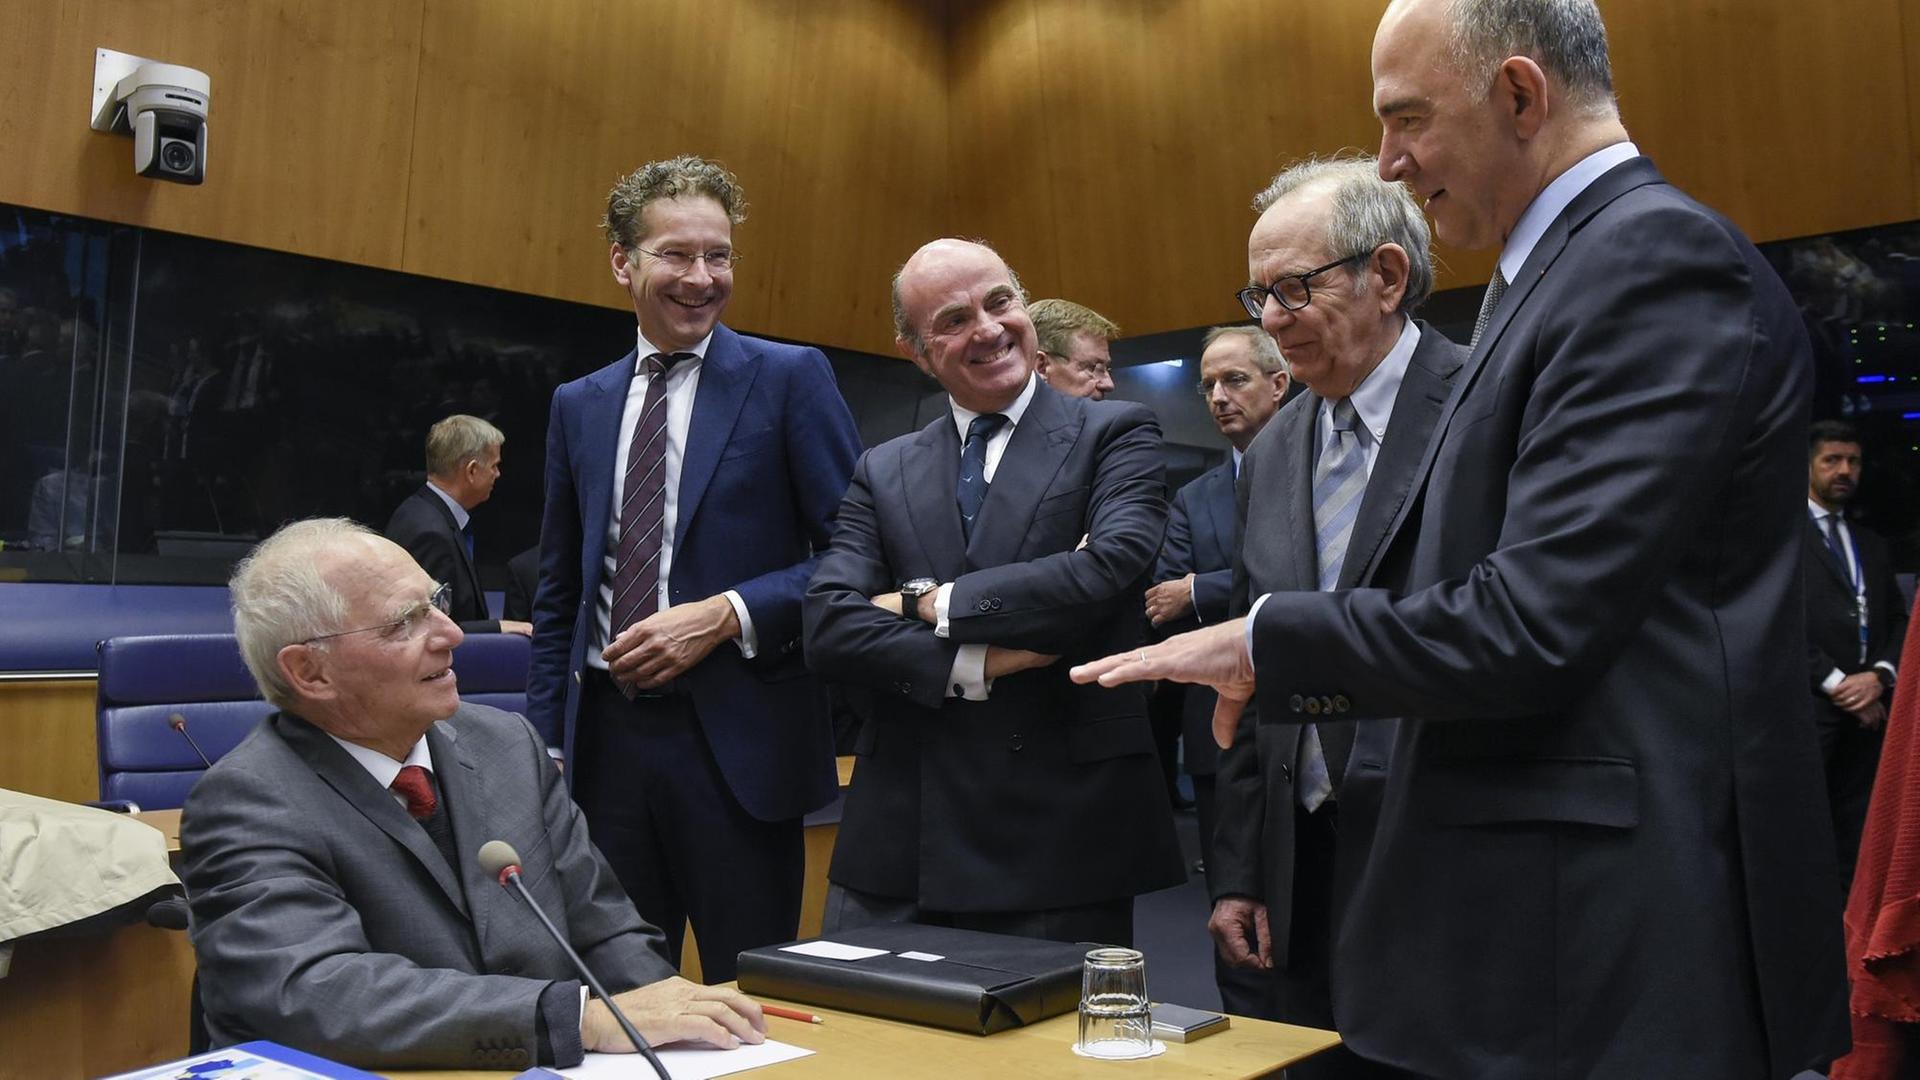 Rund um den Tisch von Schäuble haben sich die Minister versammelt, um sich von ihm zu verabschieden.